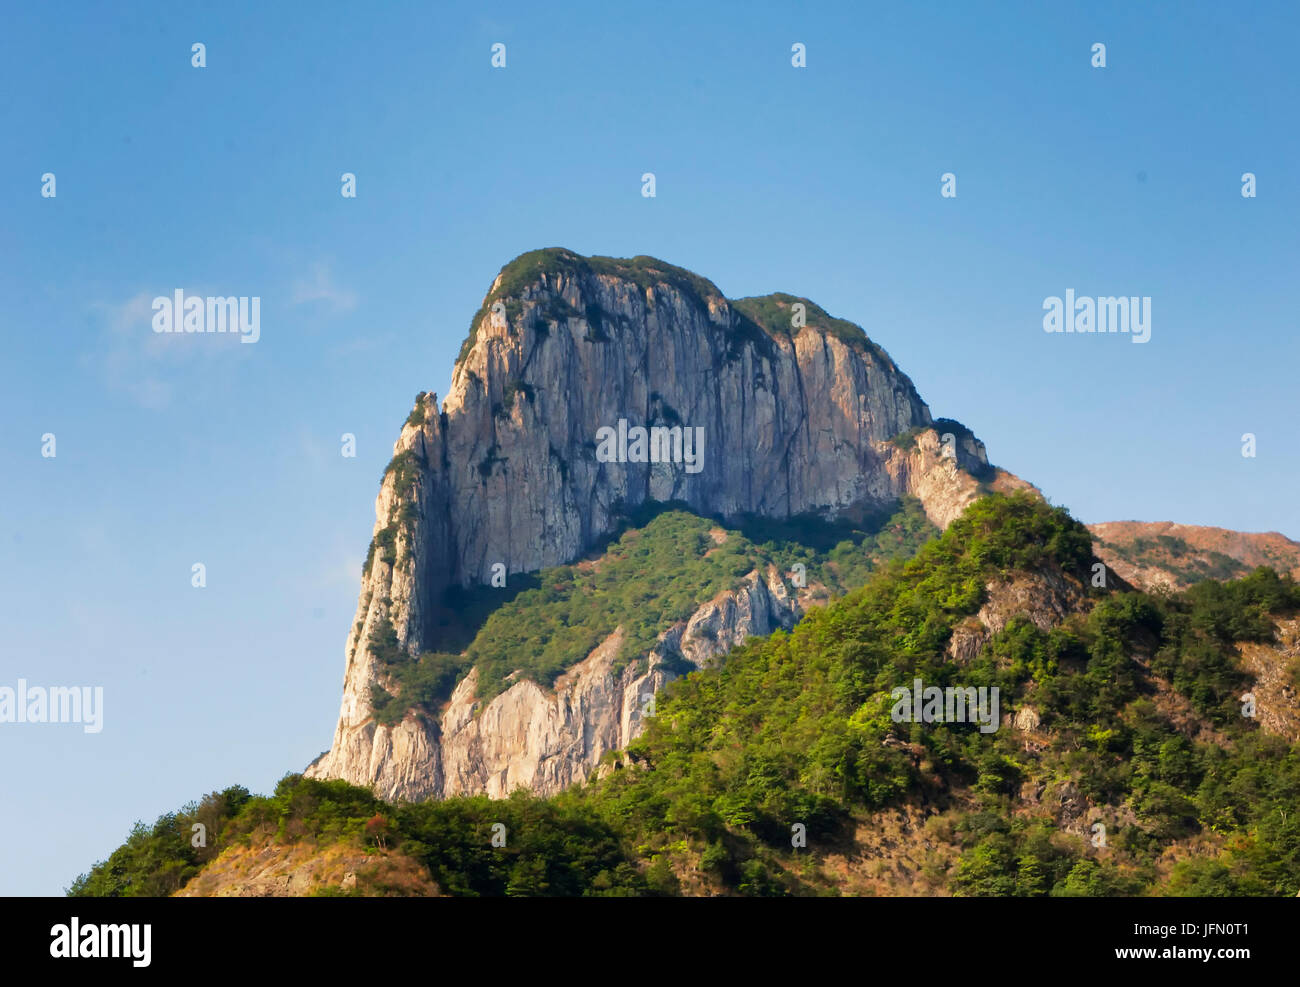 Pic Guanying montagnes dans la région pittoresque de Fangdong Yandangshan situé dans la province du Zhejiang en Chine. Banque D'Images